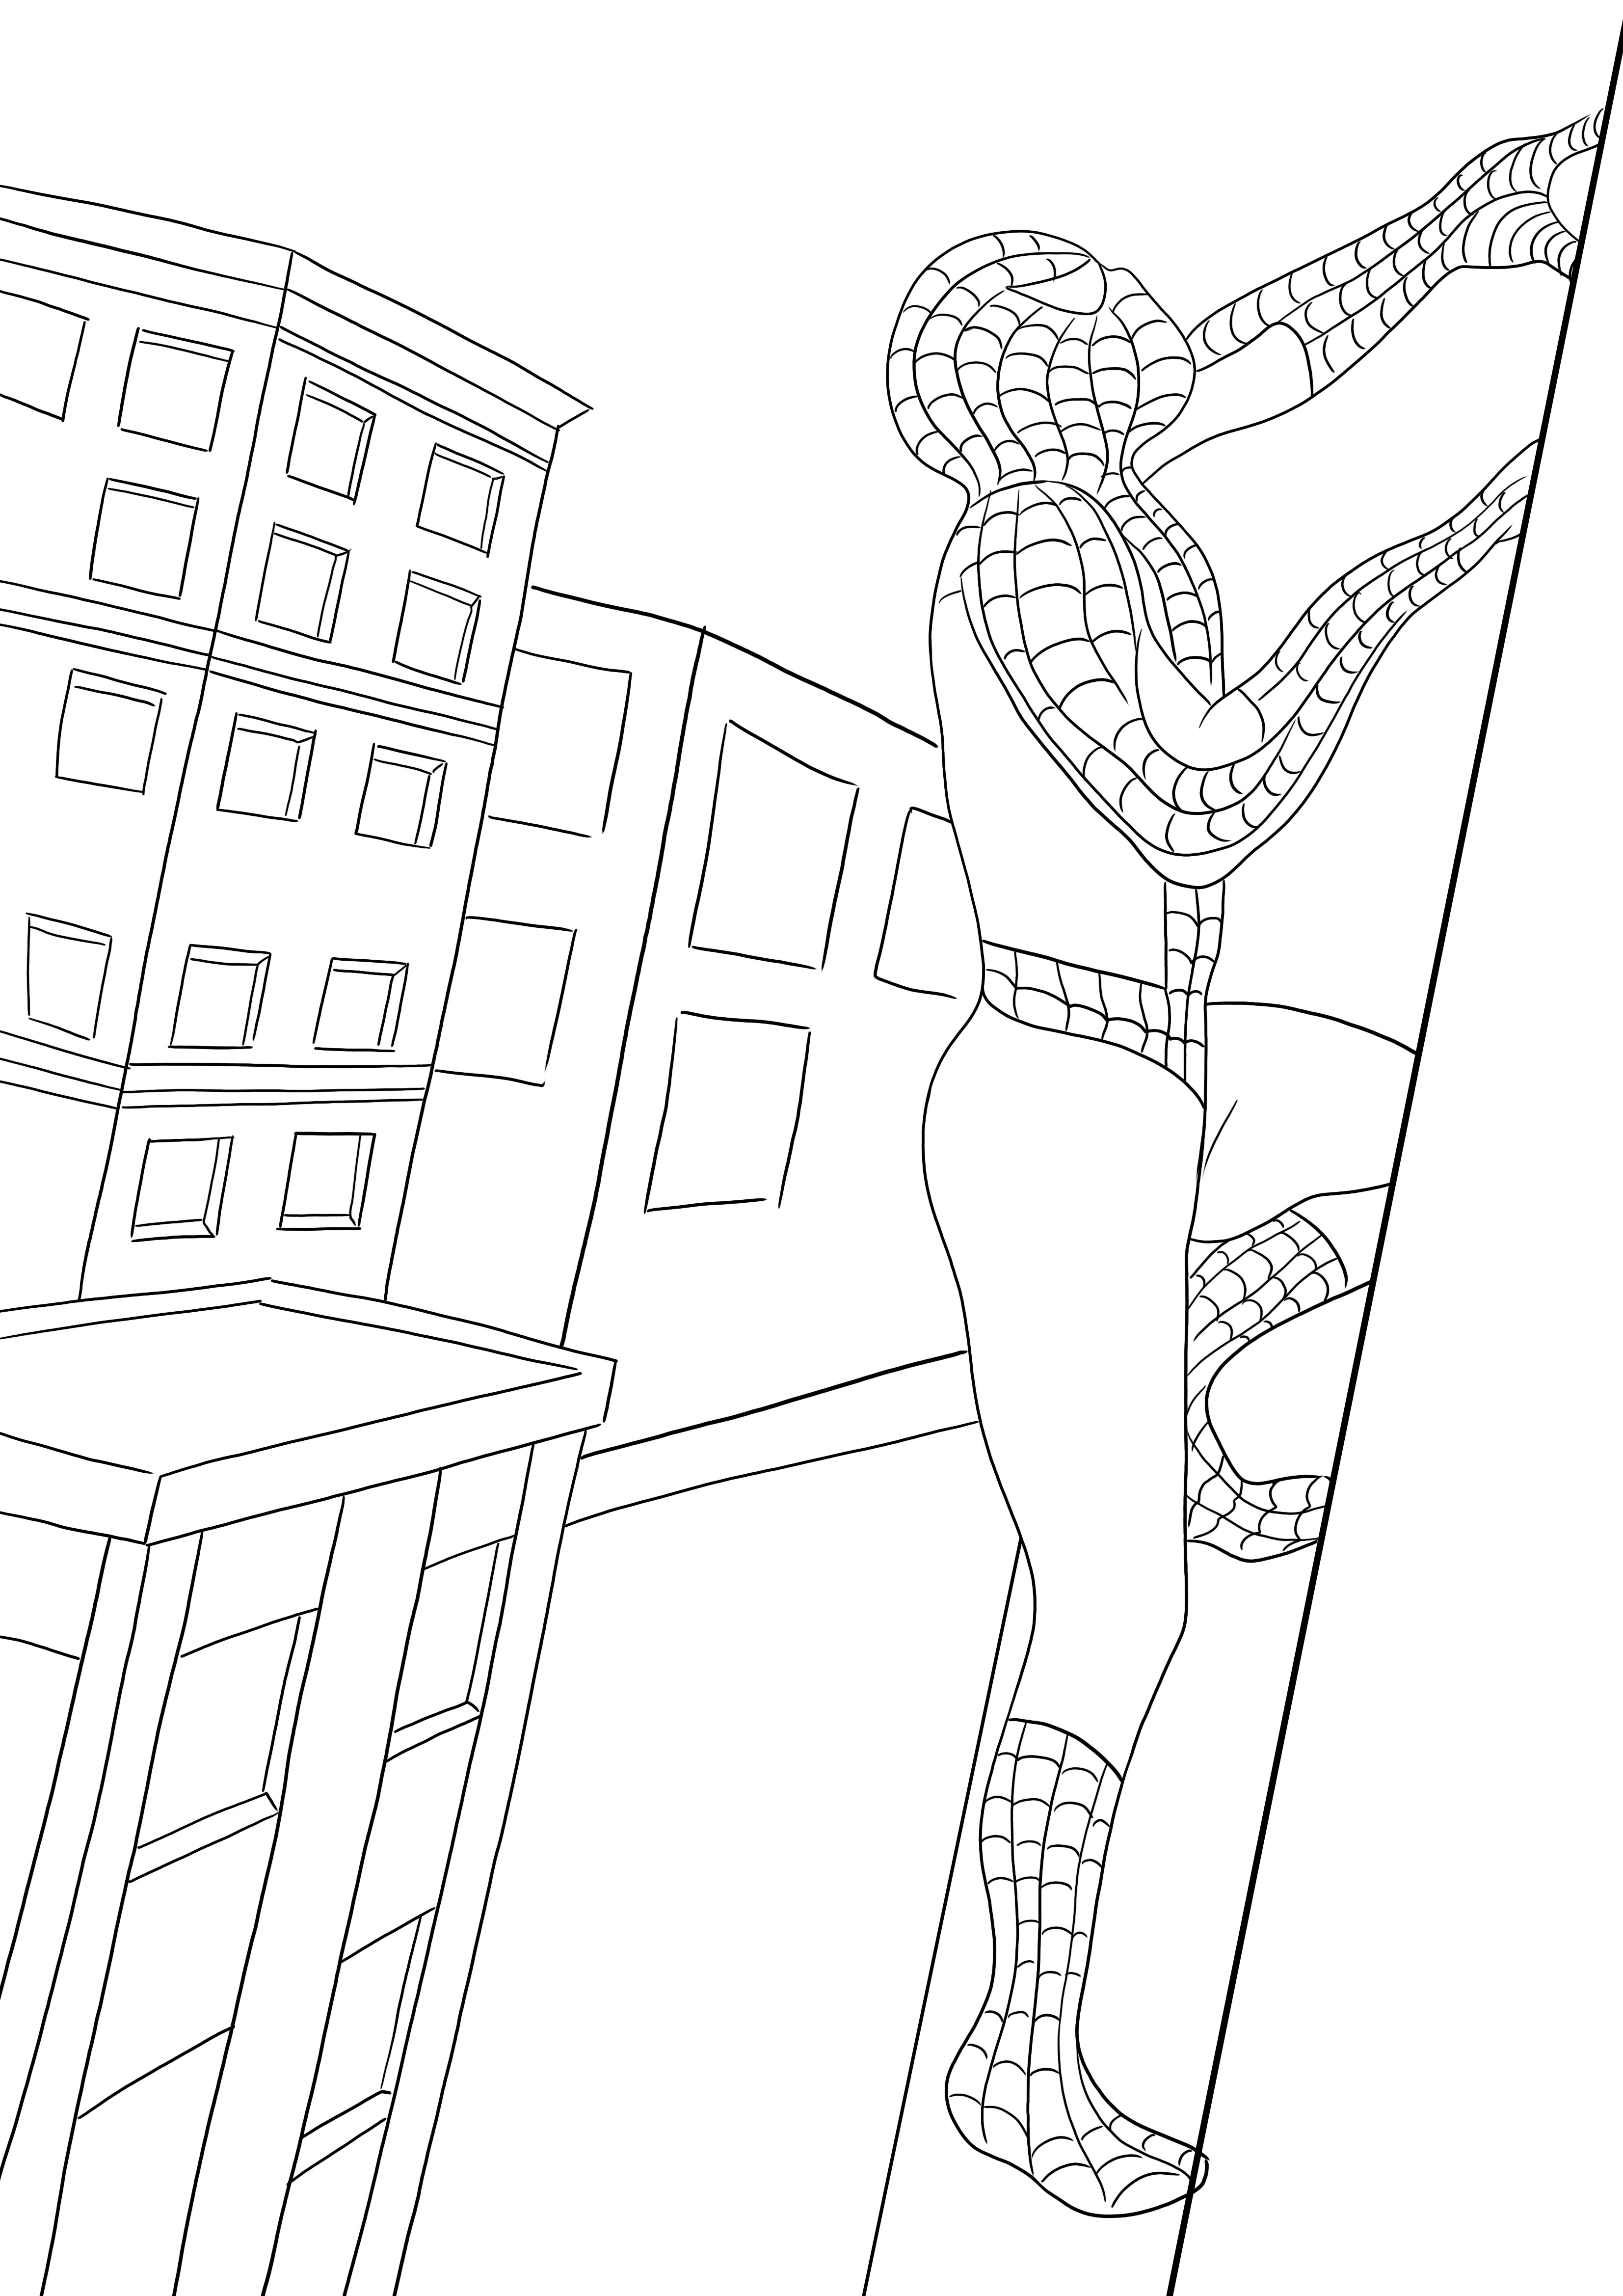 Ilmainen tulostettava Spiderman kiipeämässä rakennukseen - lapset voivat helposti värittää hänet